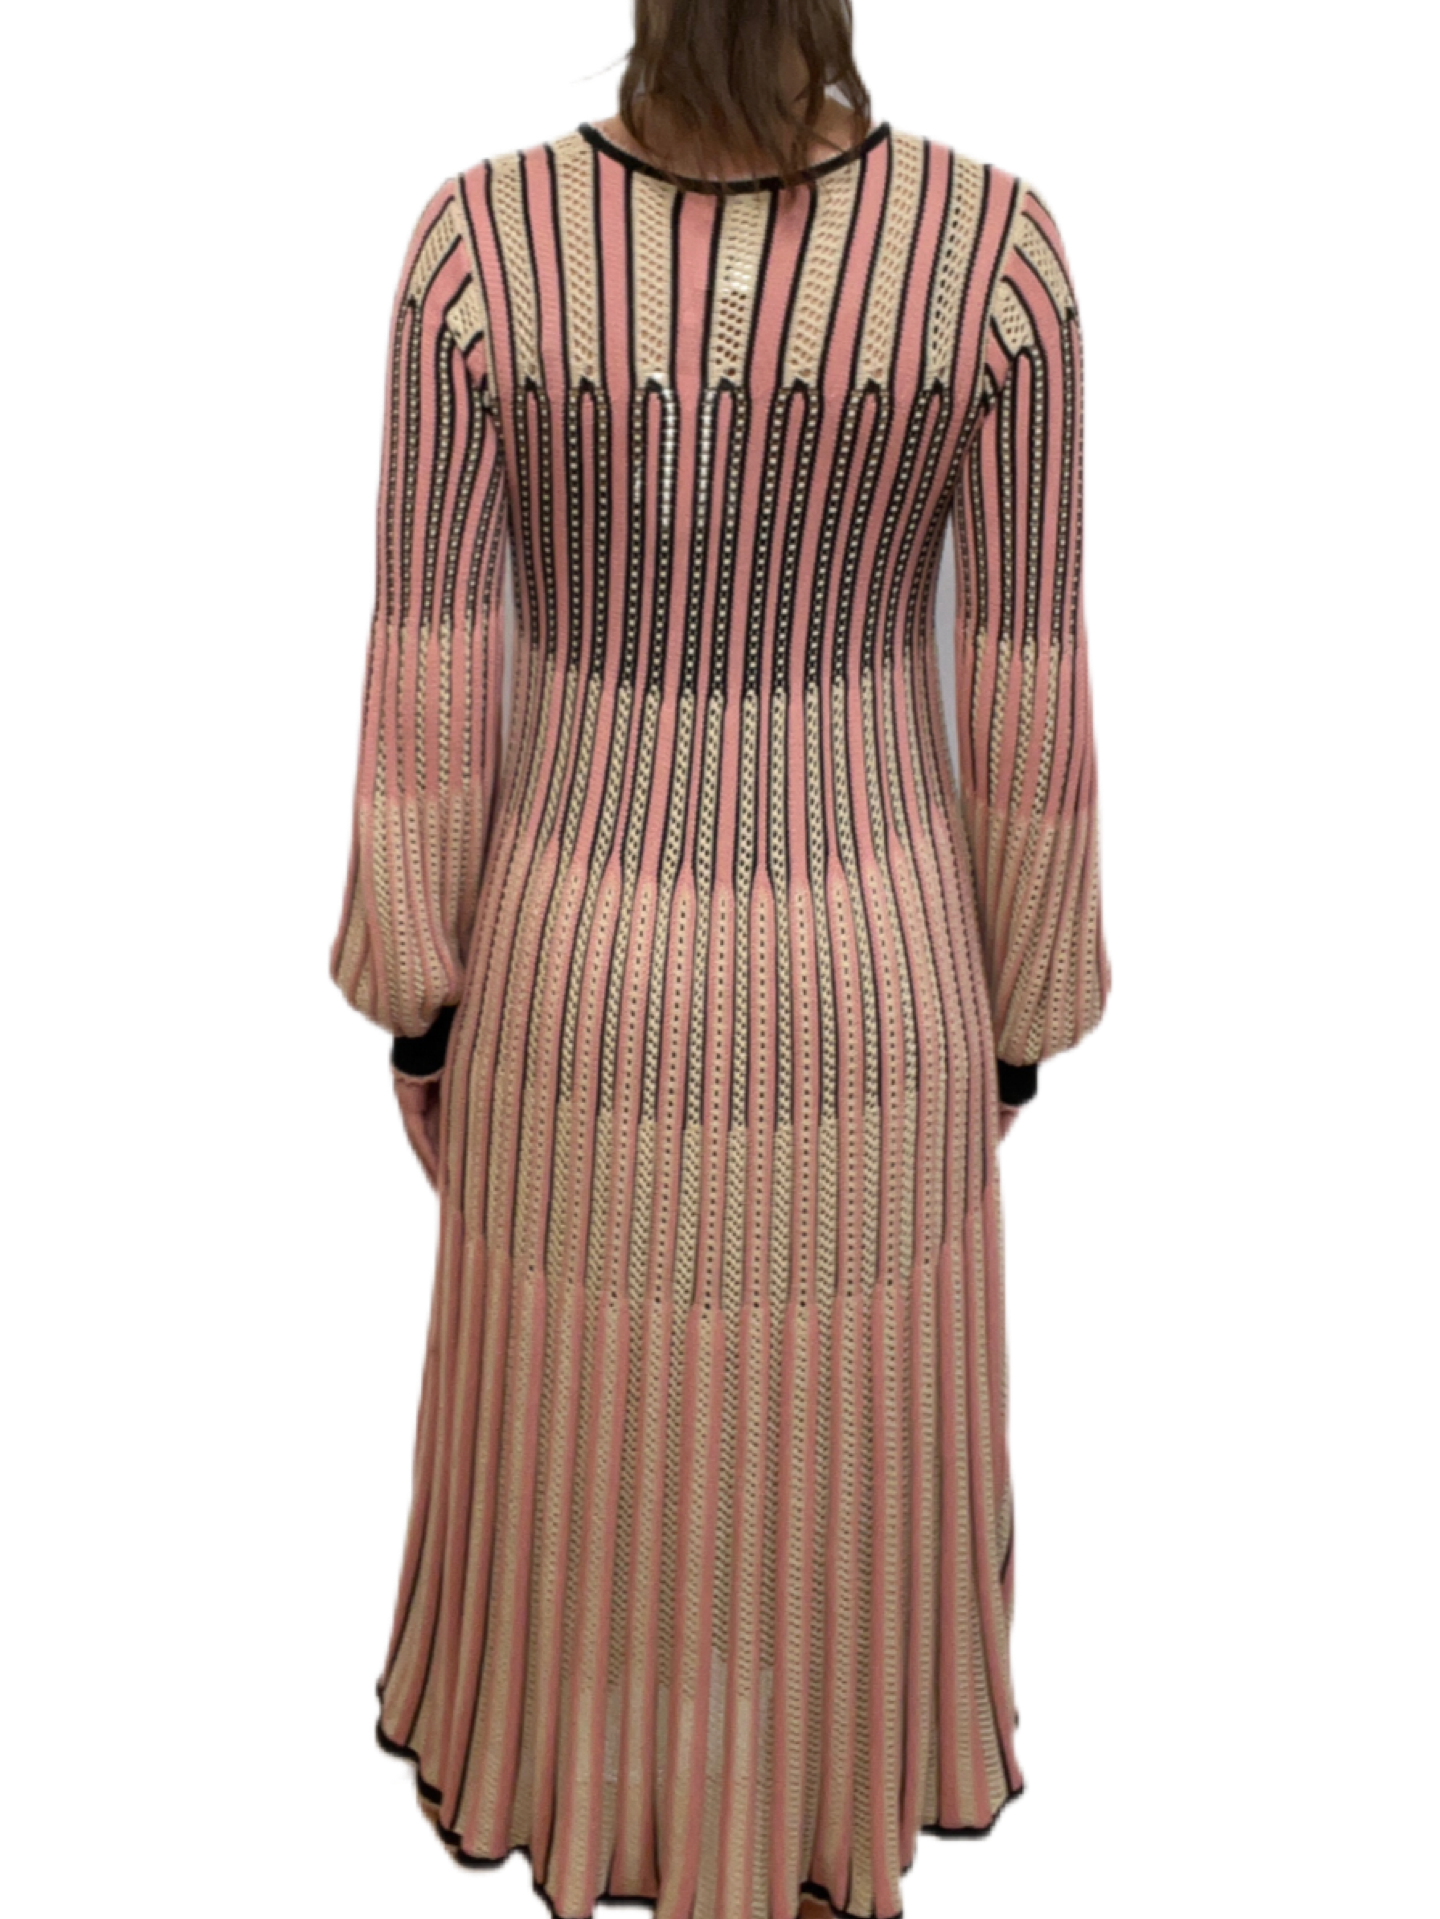 Zimmermann Crochet Pink Nude & Black Dress. Size: 2